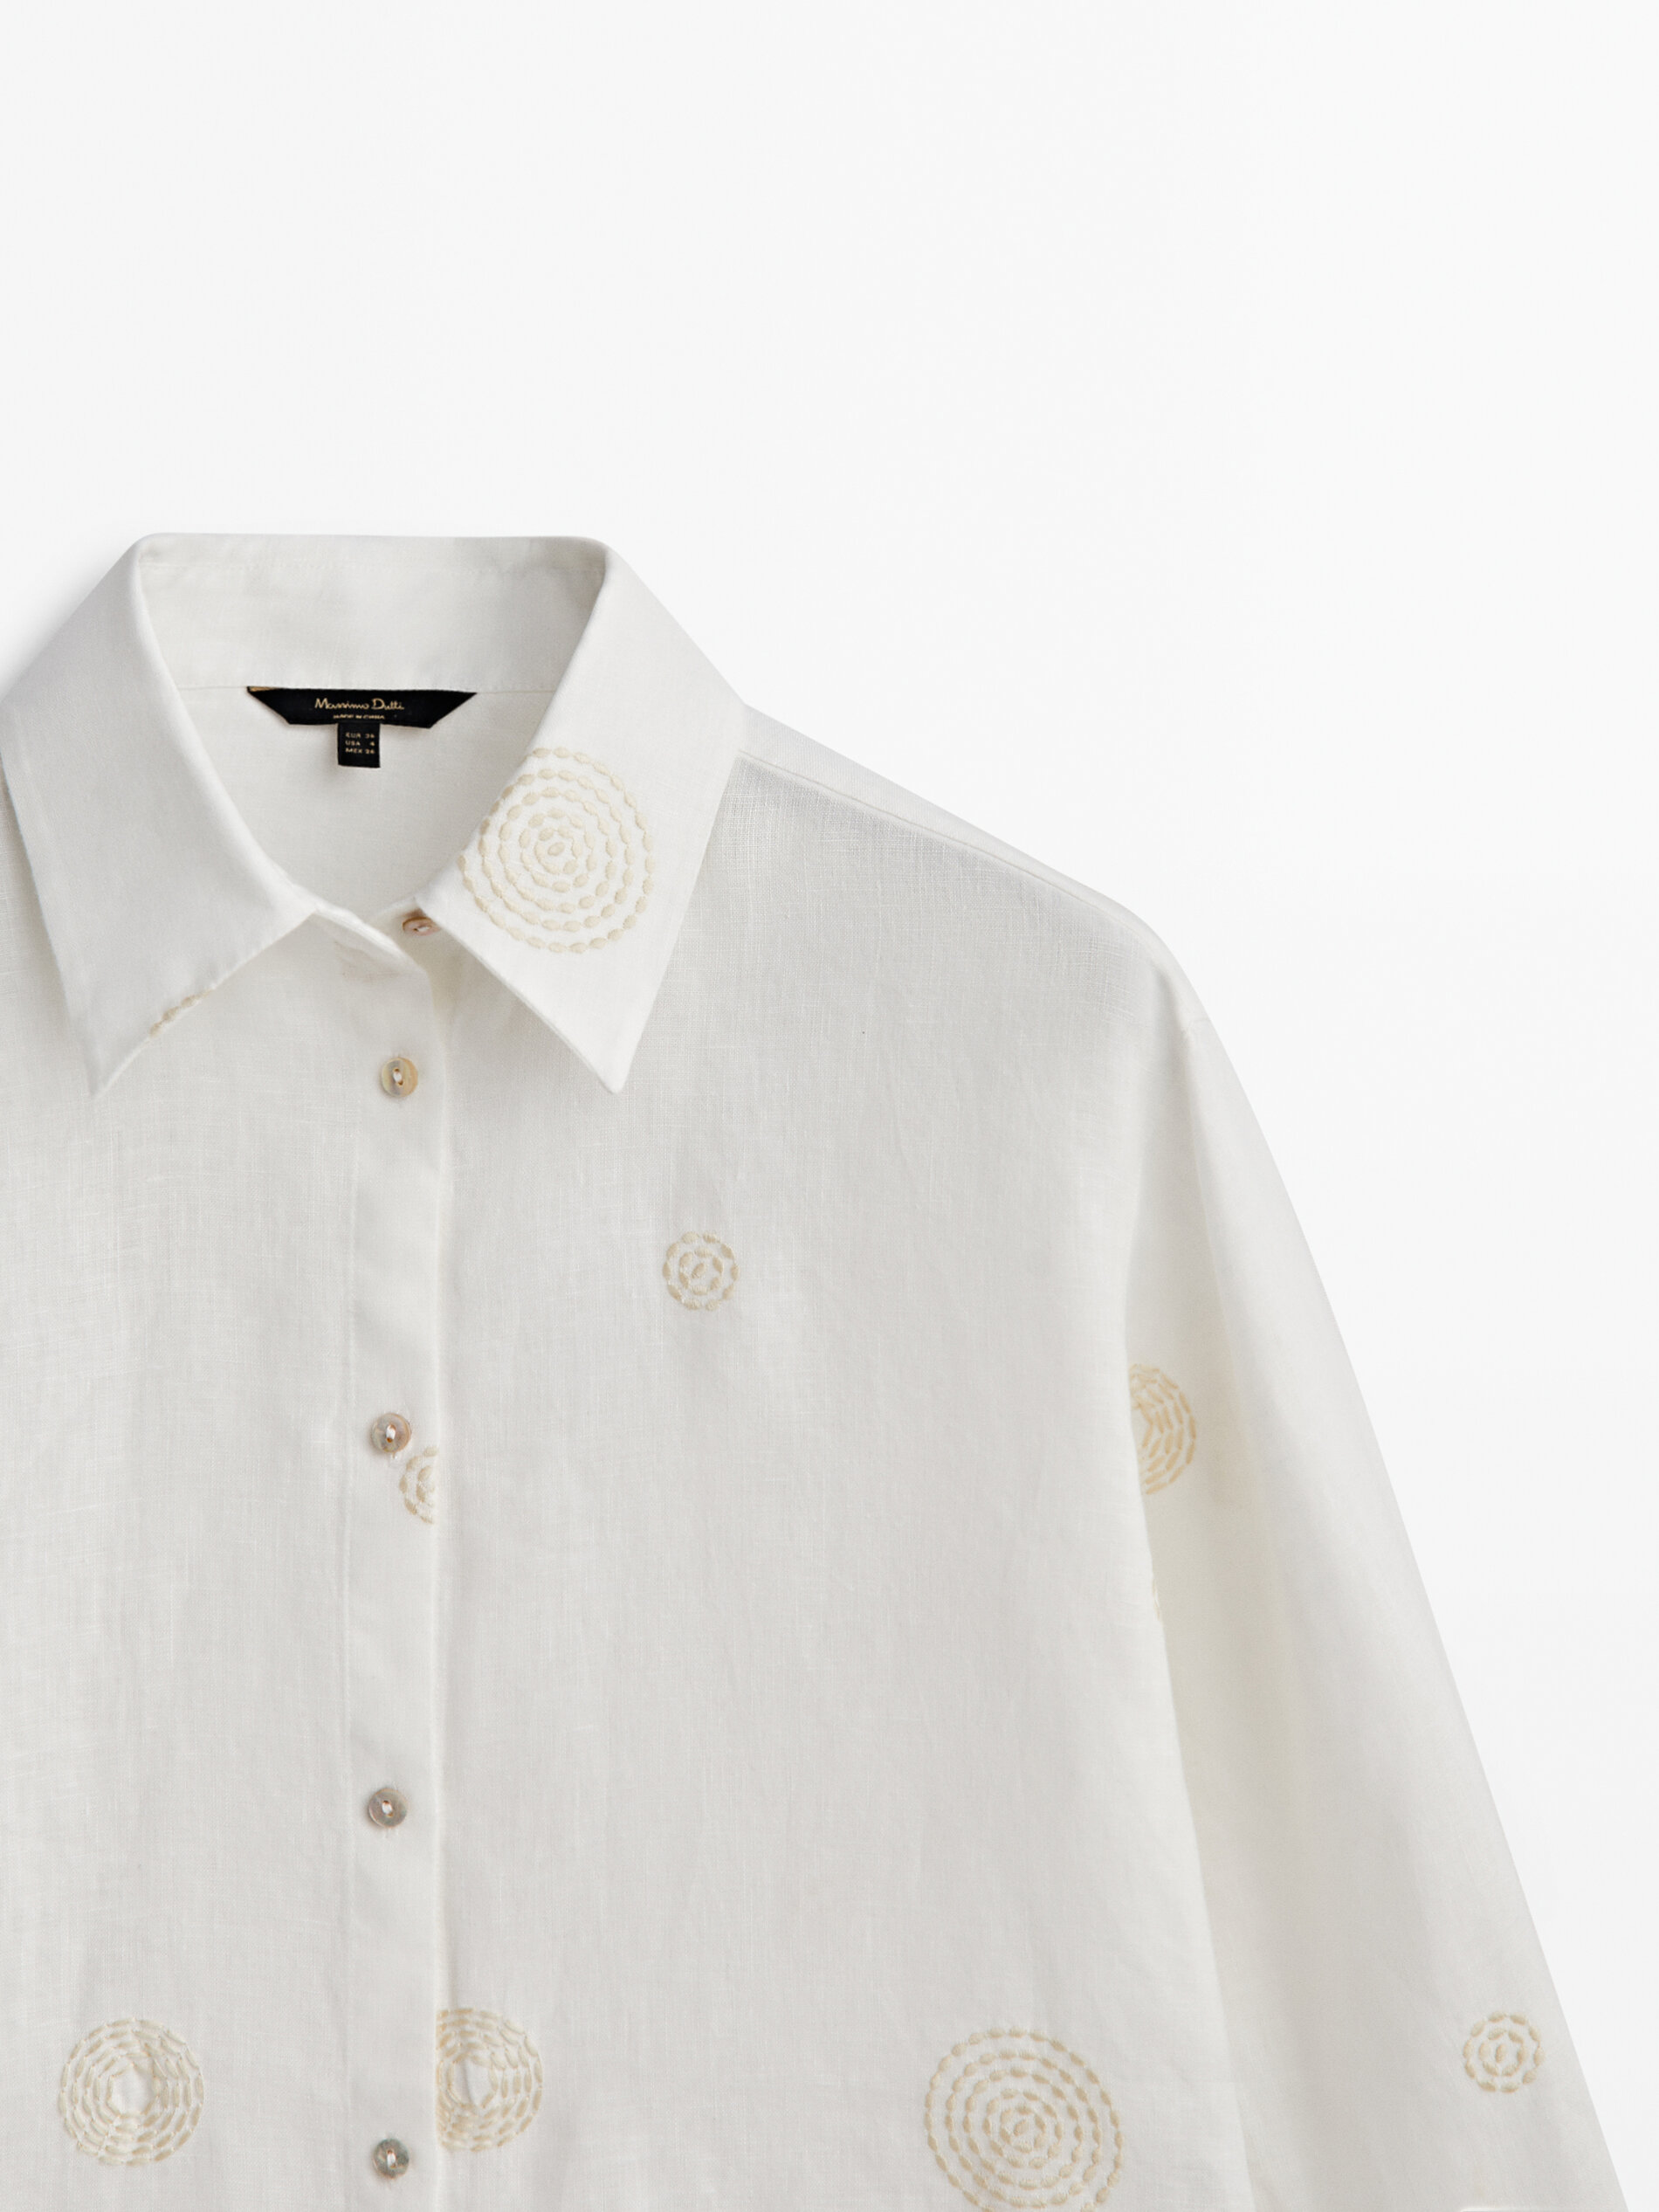 White details. Хлястик из ткани на рубашке. Massimo Dutti рубашка шитье белая хлопок. Рубашки материал белоснежный глянец. Massimo Dutti мужская рубашка льняная зеленого цвета.